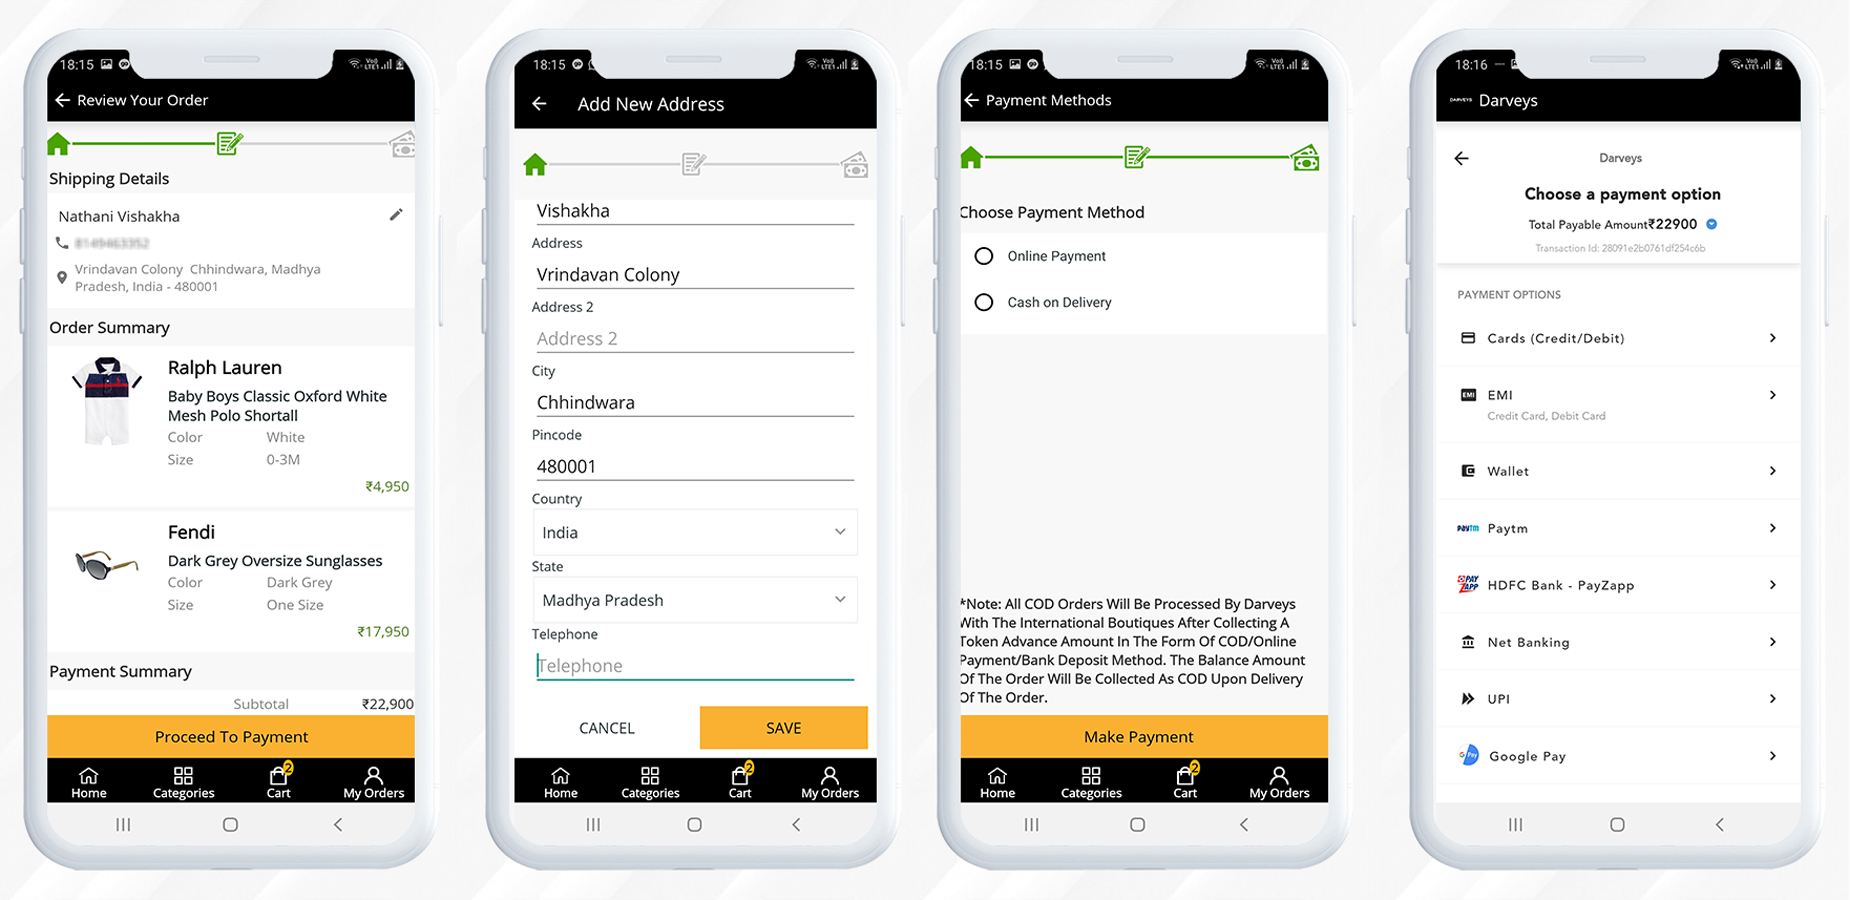 Processo di checkout e metodi di pagamento nel modulo dell'app mobile